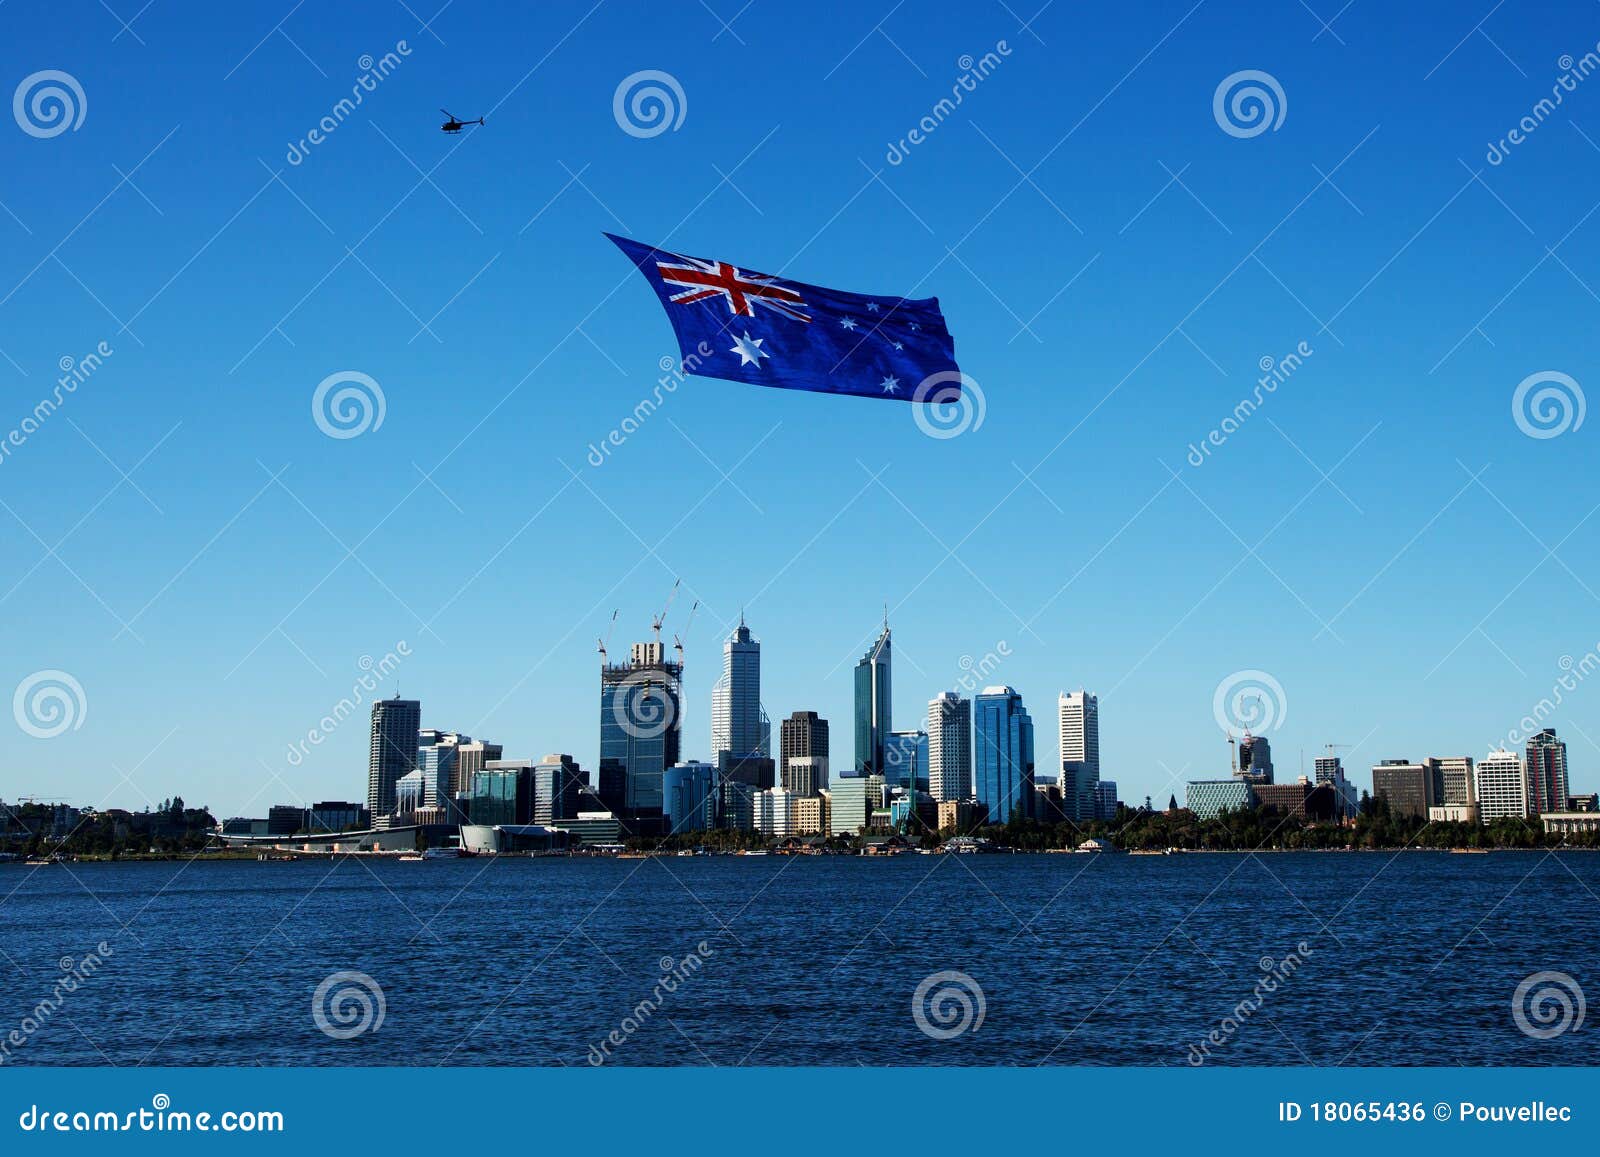 Giorno dell'Australia. Vista del centro urbano di Perth con la bandierina australiana gigante, 26 gennaio 2011.